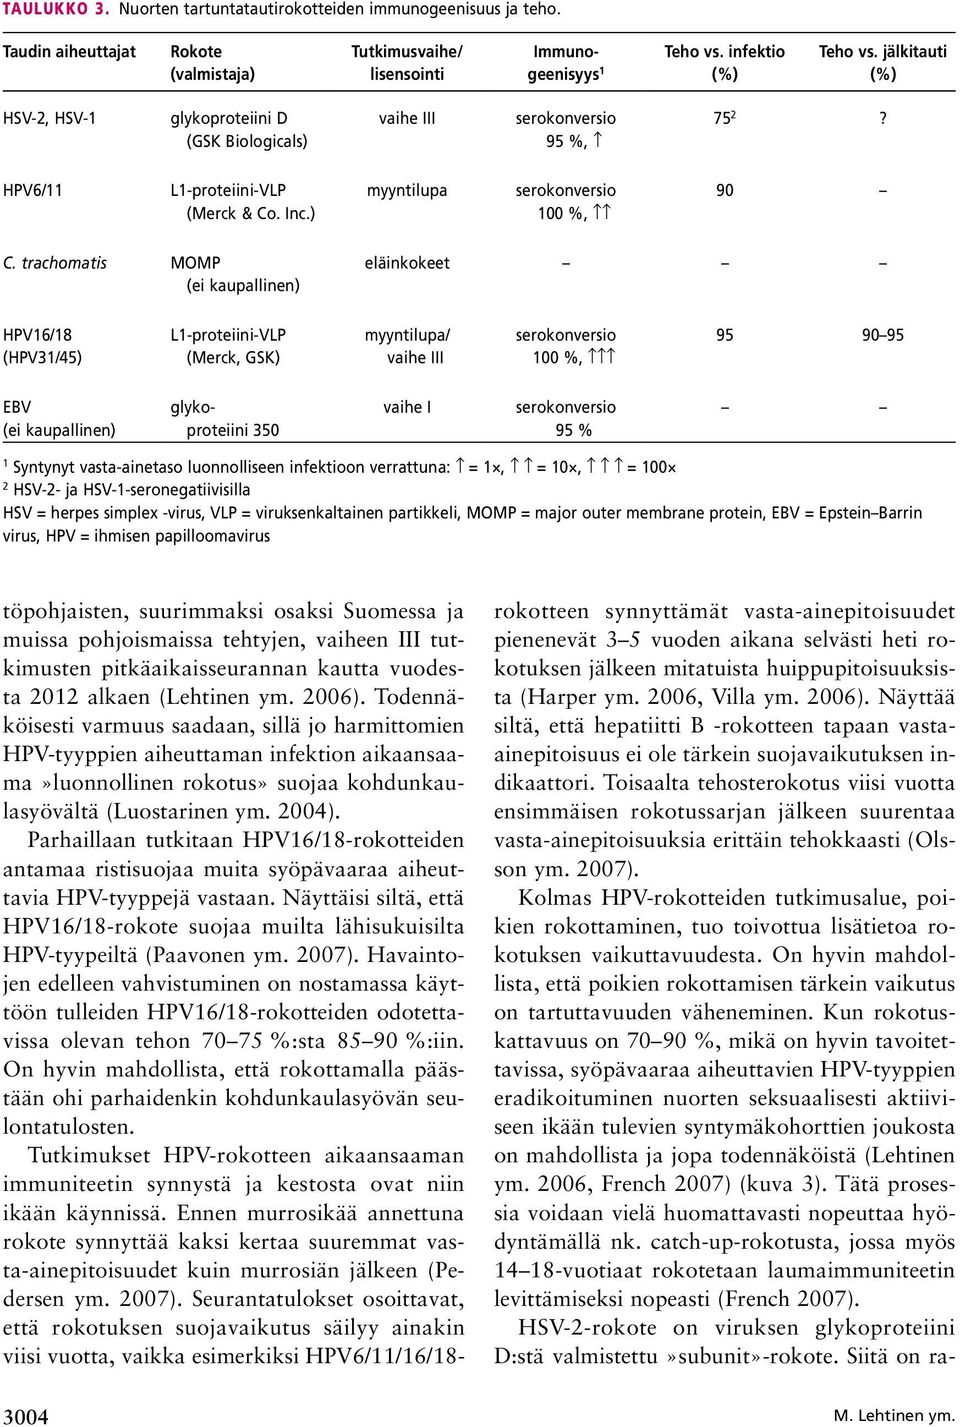 trachomatis MOMP (ei kaupallinen) eläinkokeet HPV16/18 (HPV31/45) L1-proteiini-VLP (Merck, GSK) myyntilupa/ vaihe III serokonversio 100 %, 95 90 95 EBV (ei kaupallinen) glykoproteiini 350 vaihe I